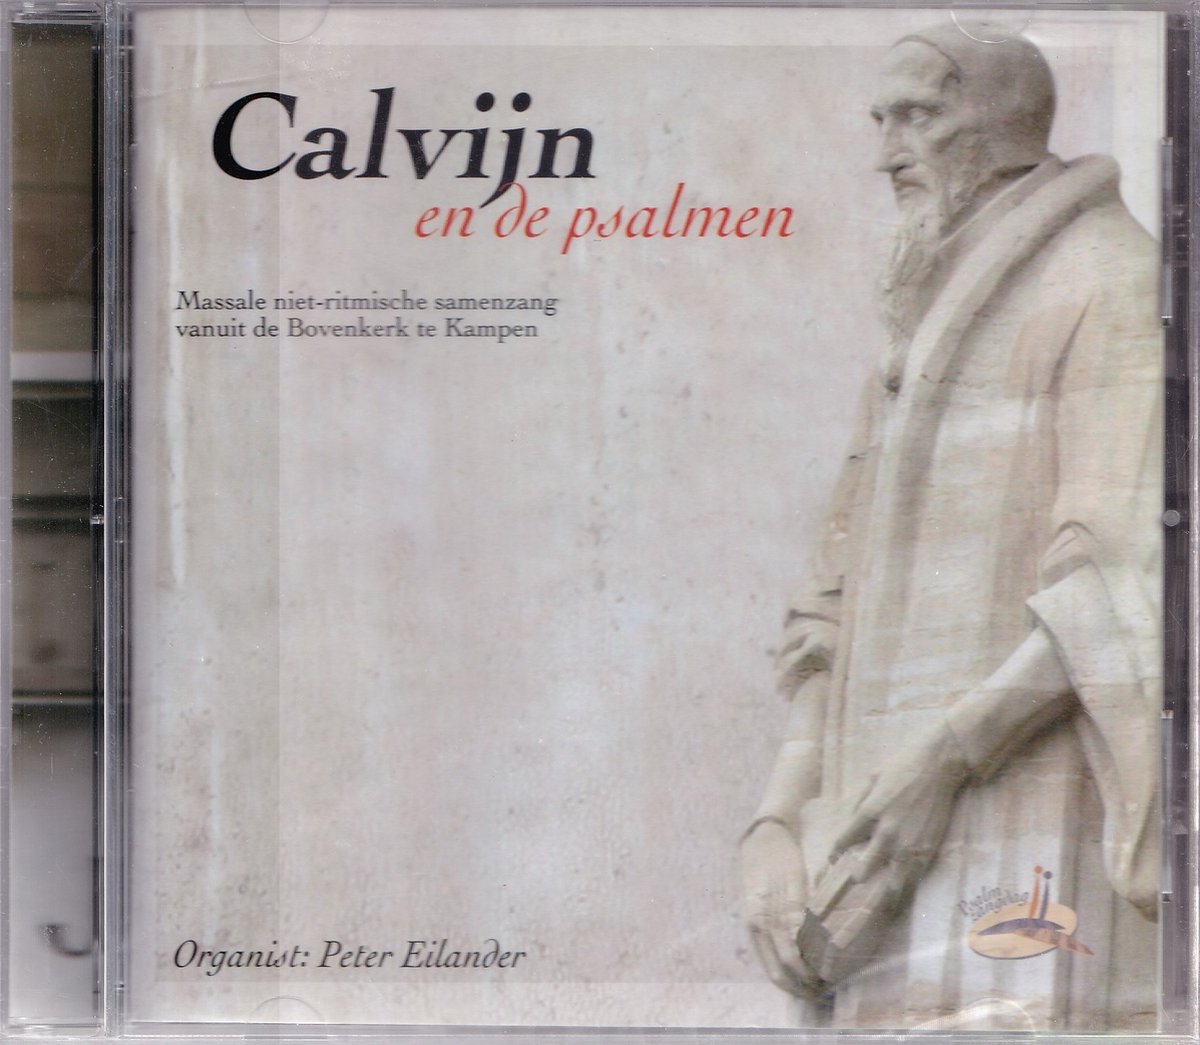 Afbeelding van product Calvijn en de Psalmen - Massale niet-ritmische samenzang vanuit de Bovenkerk te Kampen o.l.v. Peter Eilander  - Massale niet-ritmische samenzang o.l.v. Peter Eilander